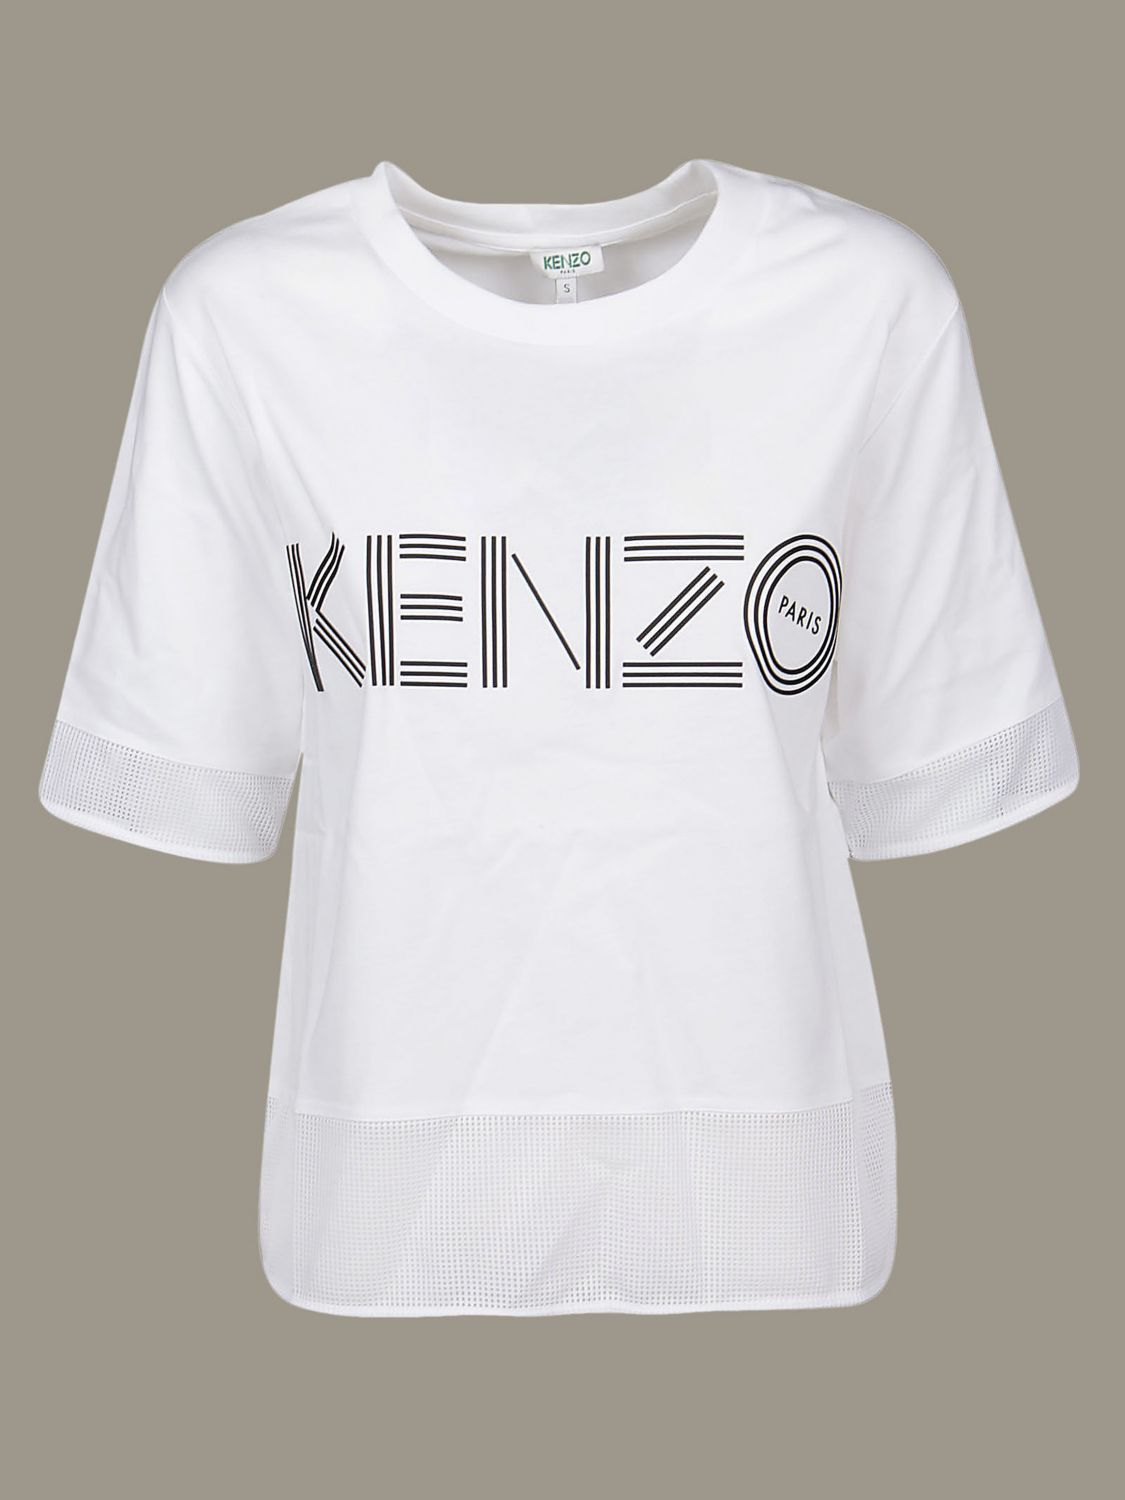 womens white kenzo t shirt